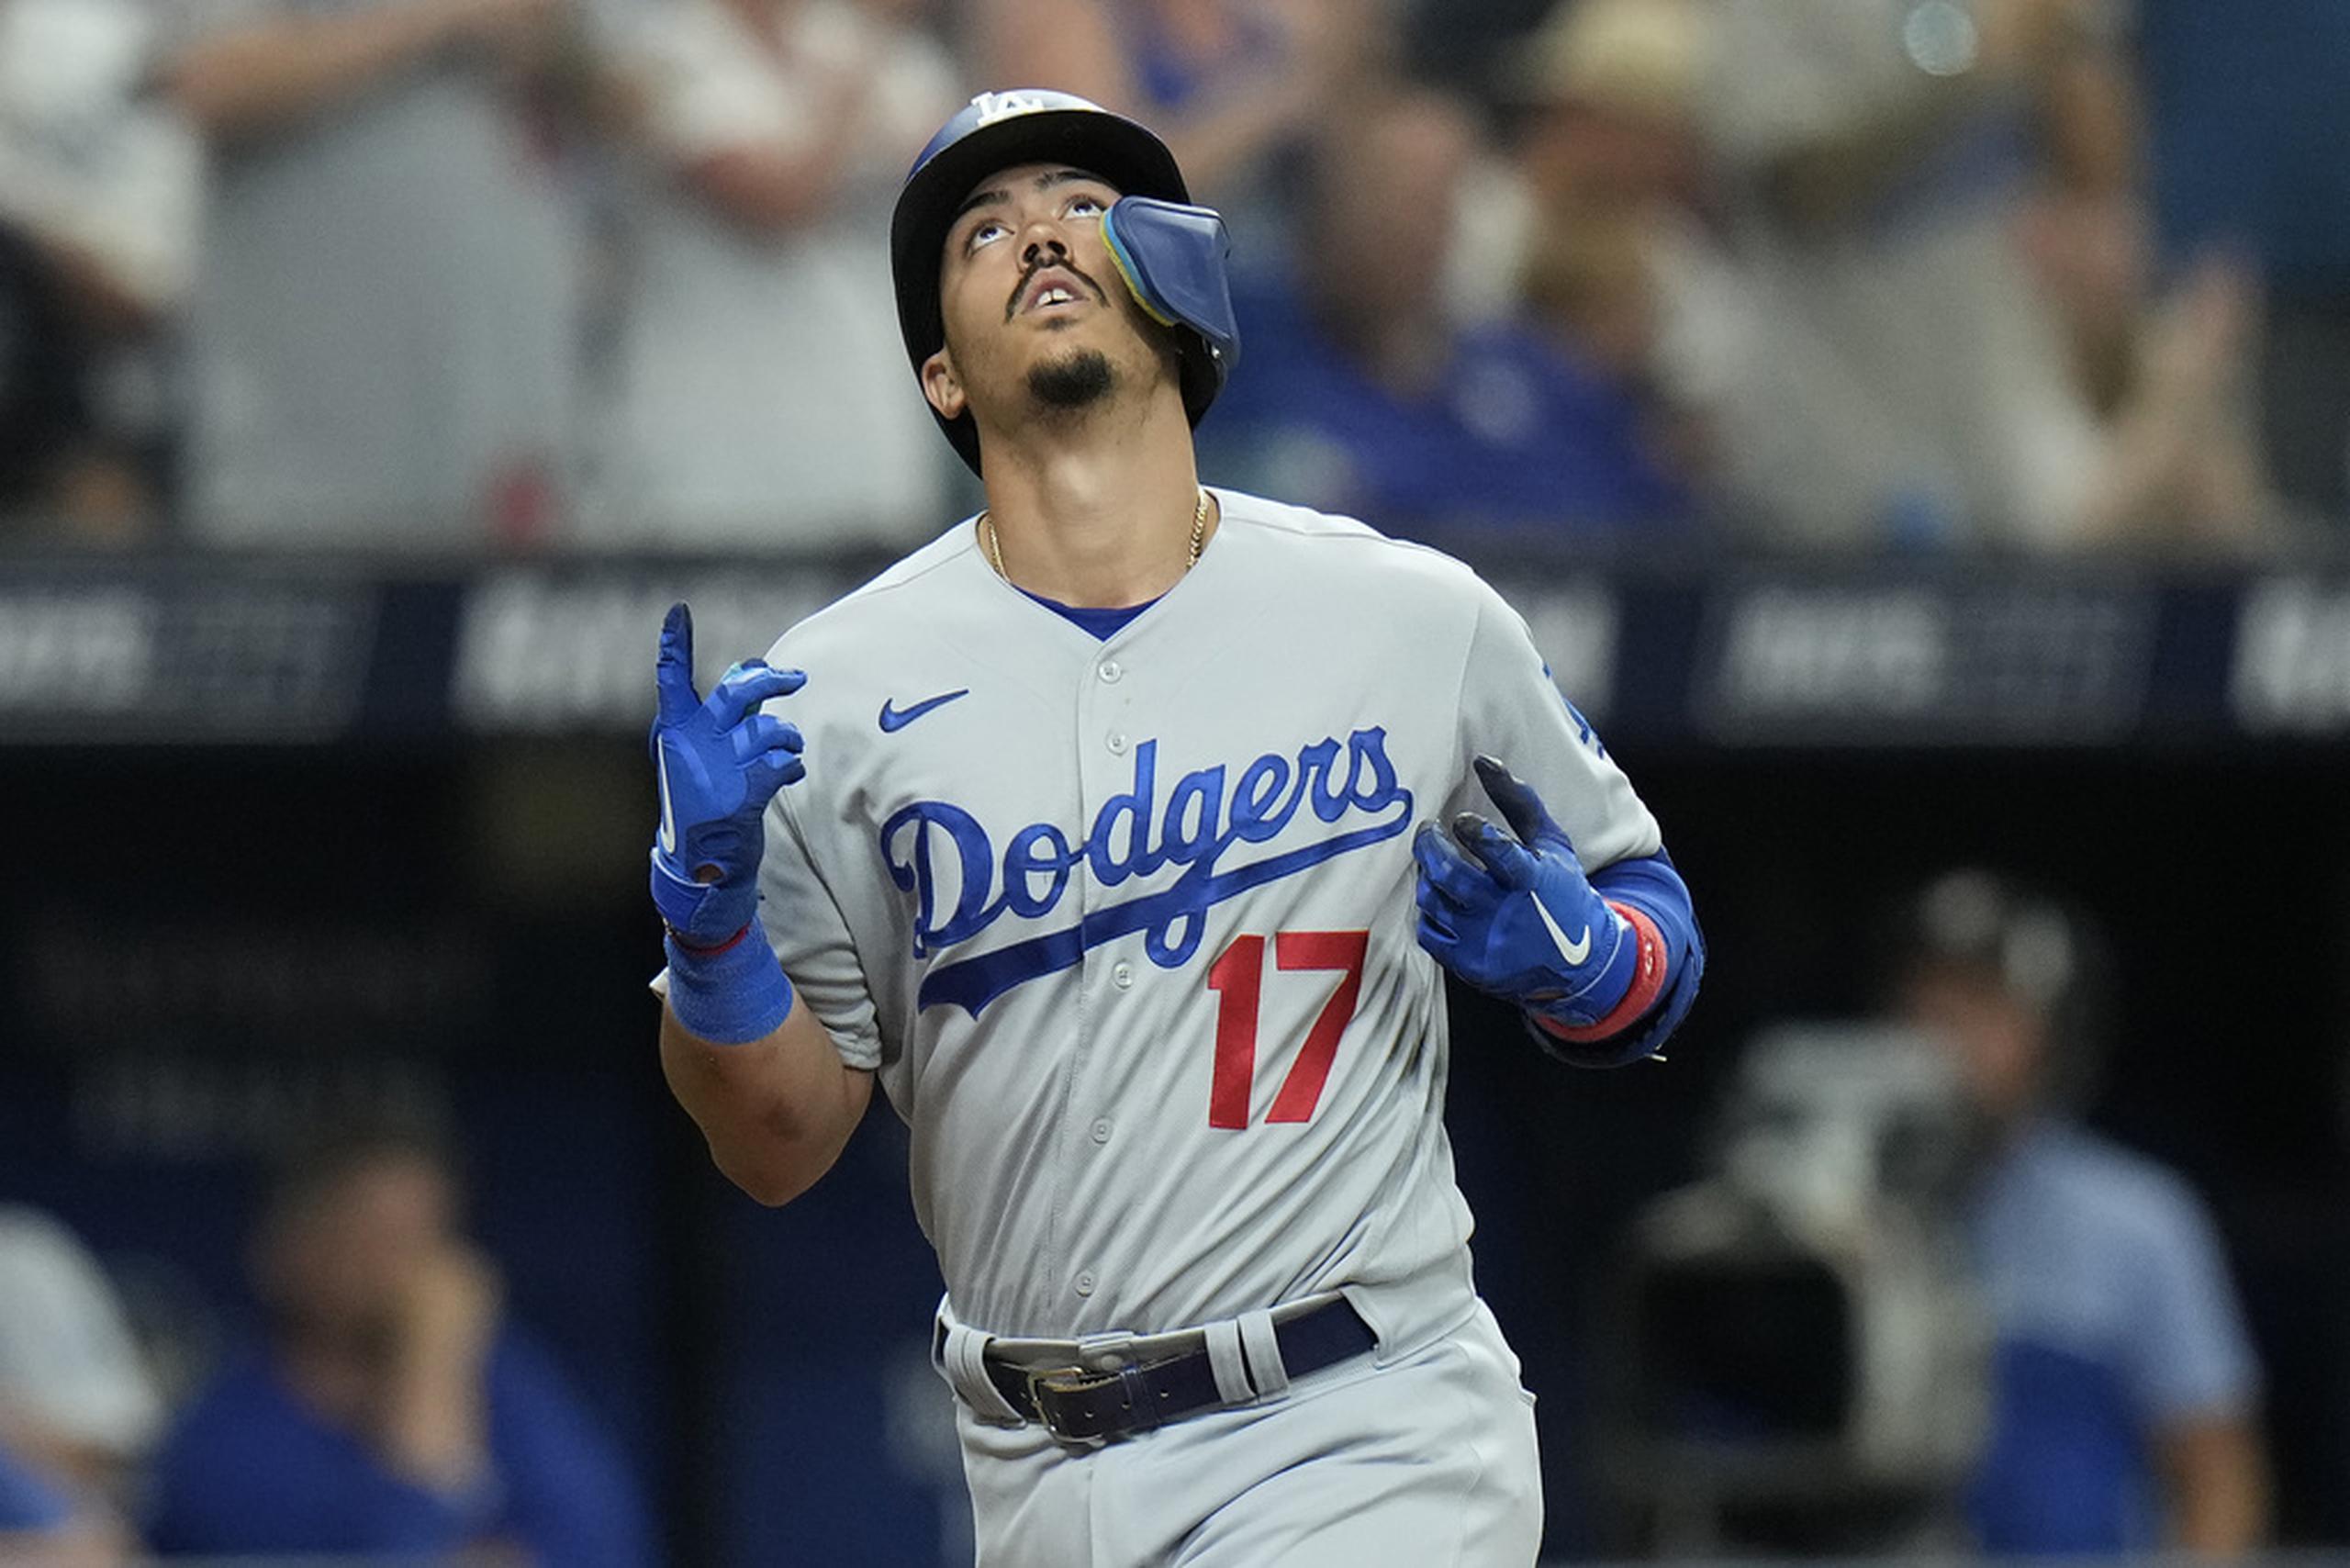 El cubano Miguel Vargas, de los Dodgers de Los Ángeles, festeja tras conectar un jonrón en el duelo ante los Rays de Tampa Bay.